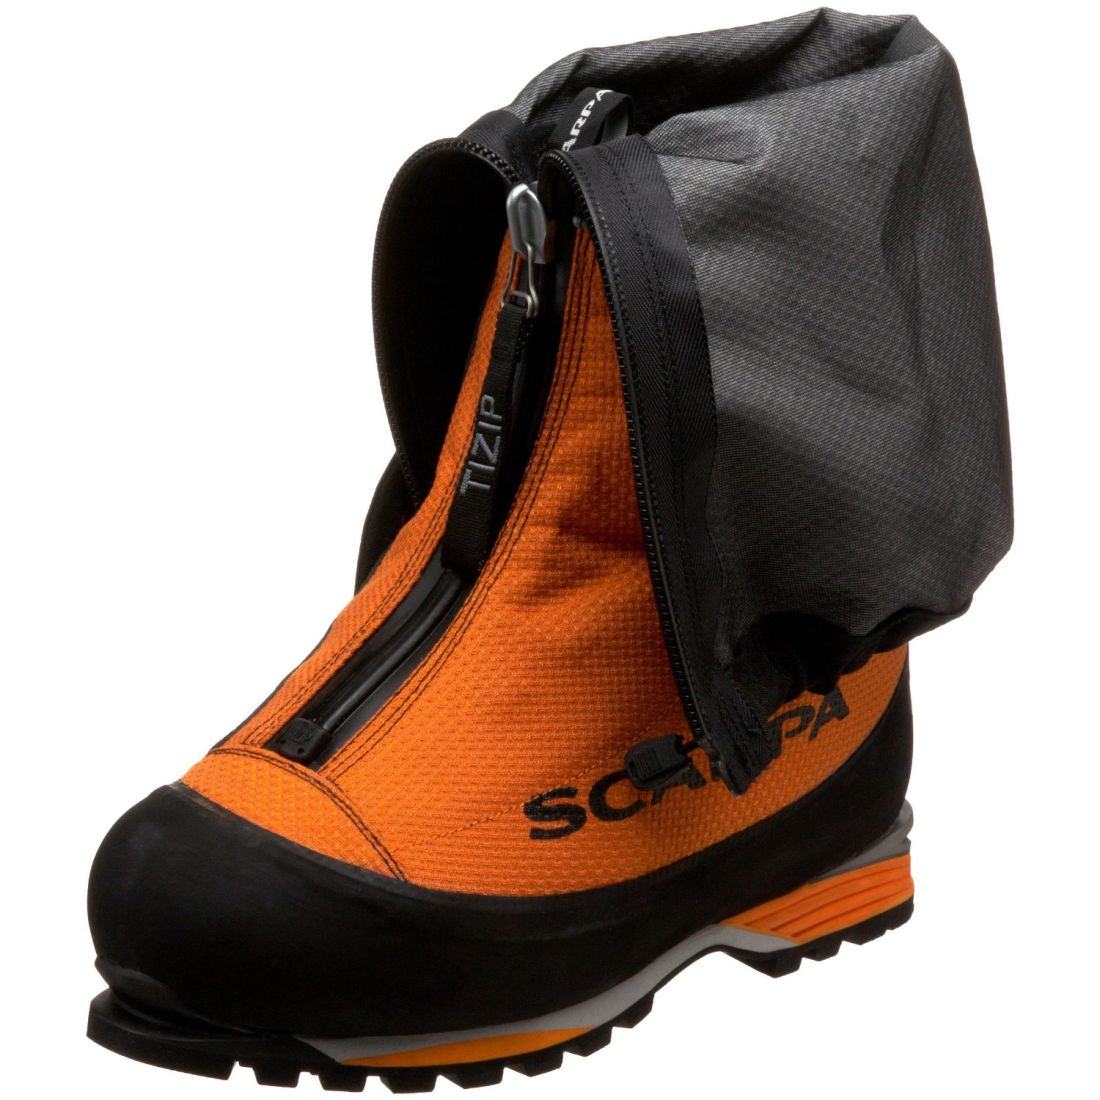 Scarpa - Альпинистские ботинки Phantom 8000